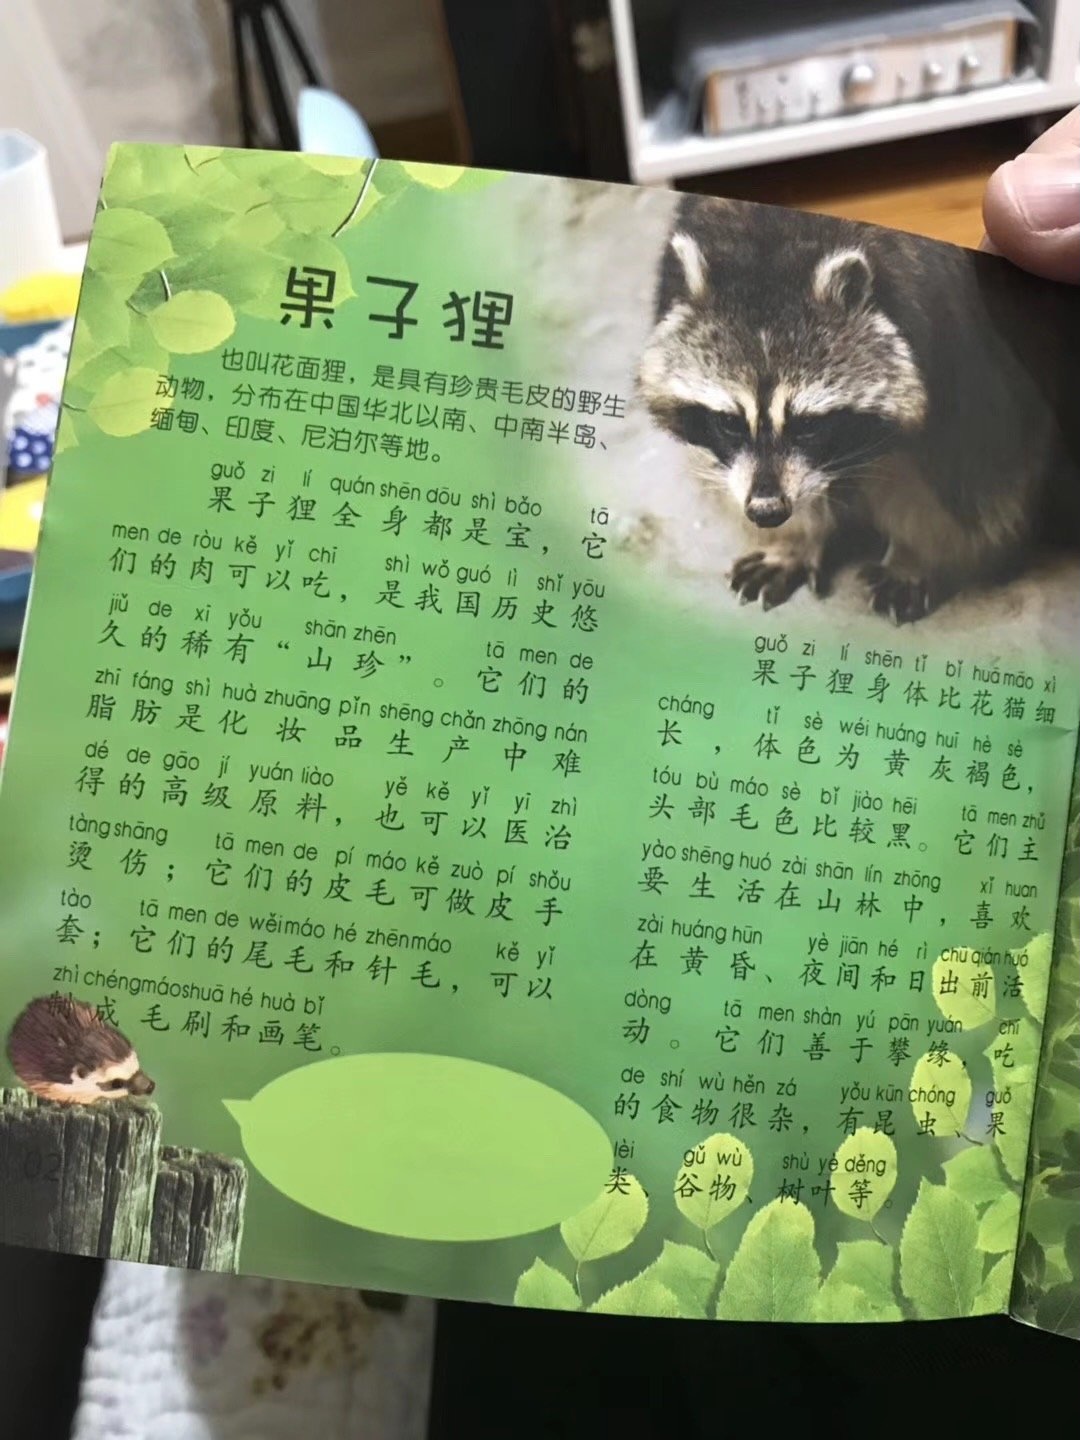 武大出版社一儿童刊物称果子狸可吃 回应 已下架 国内 新京报网